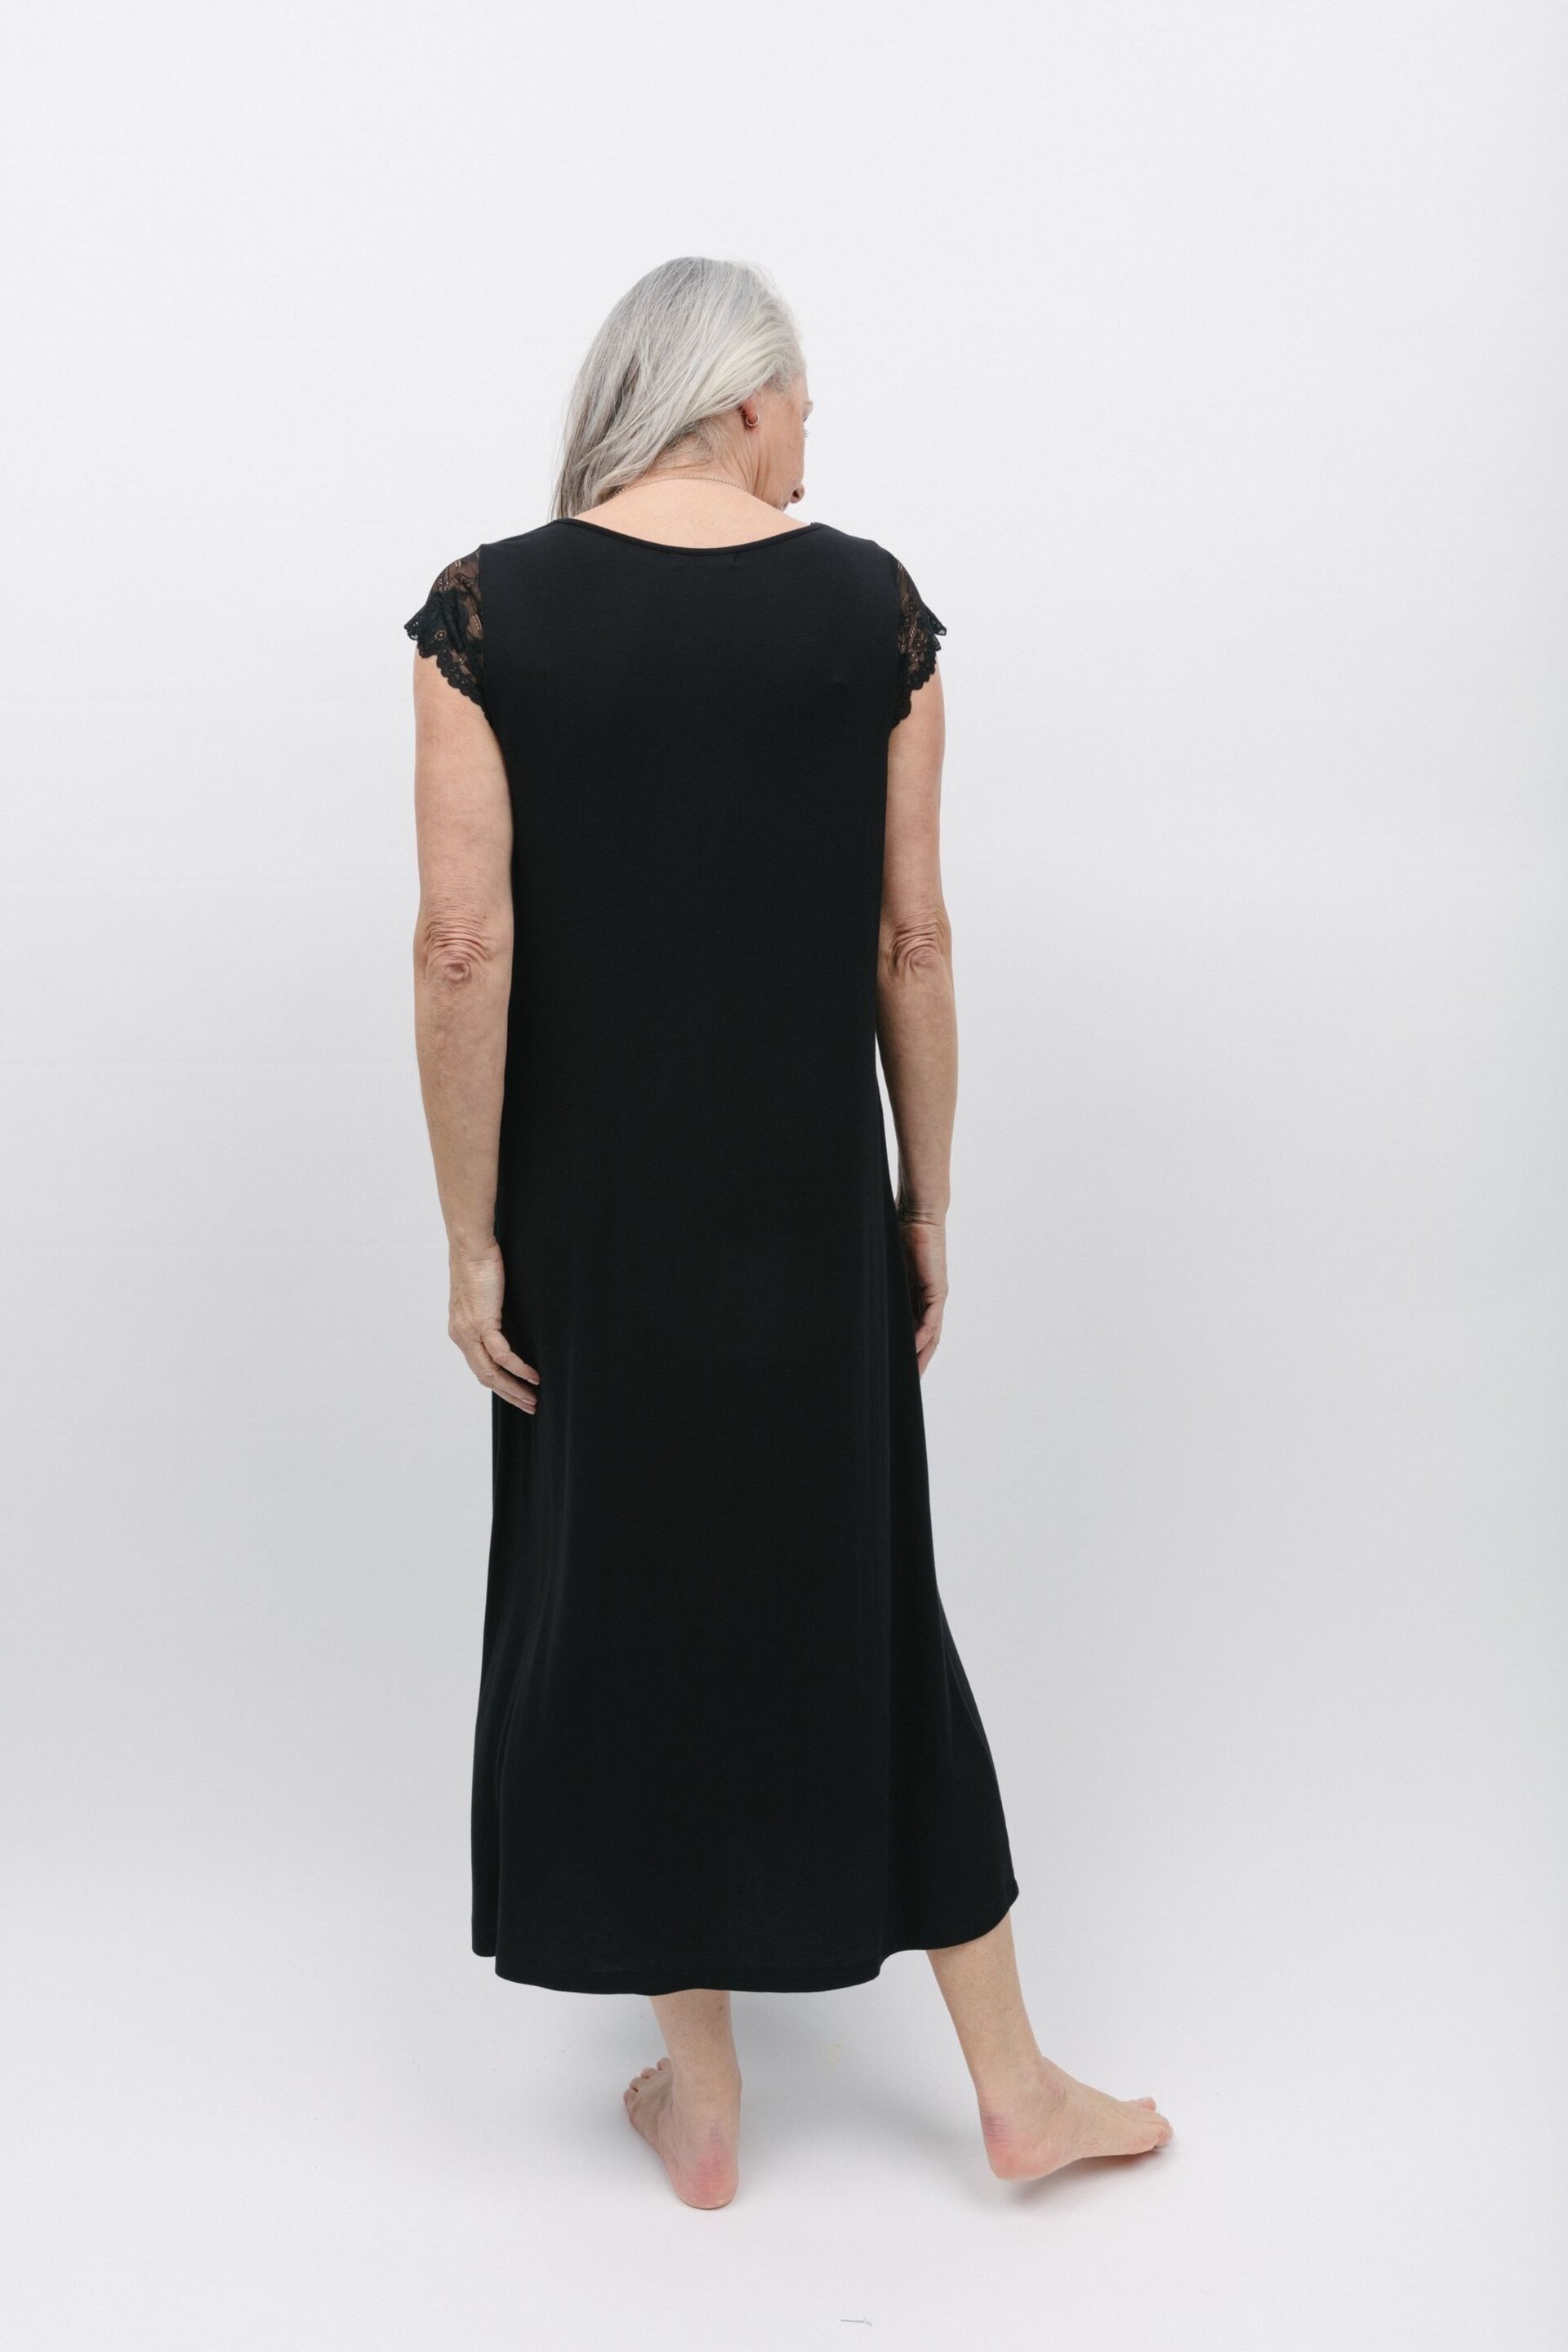 Nora Rose Black Jersey Long Nightdress - Image 3 of 4